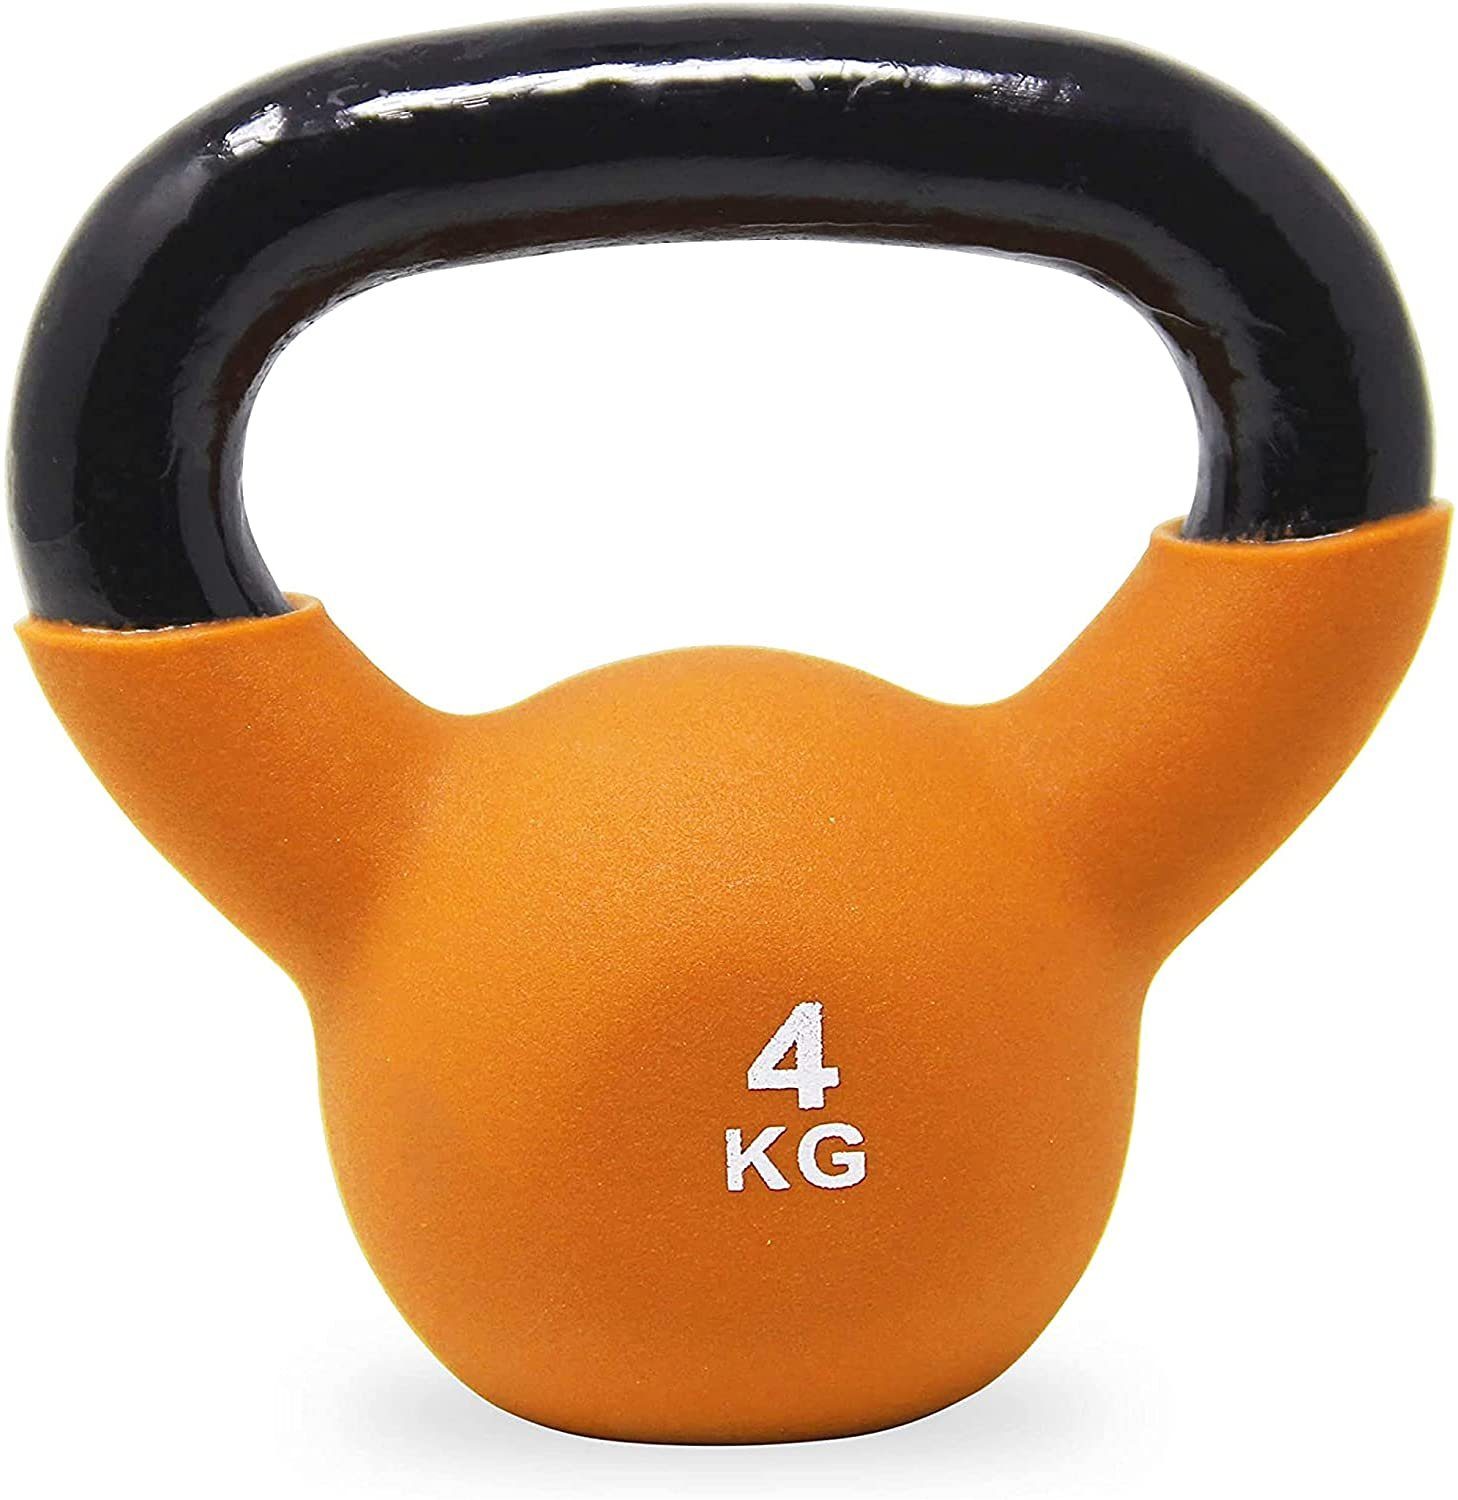 kg Neopren Kugelhantel inkl. (Gelb) 2 Kg Farben/Gewichte, Workout, versch. 2-26 POWRX Kettlebell